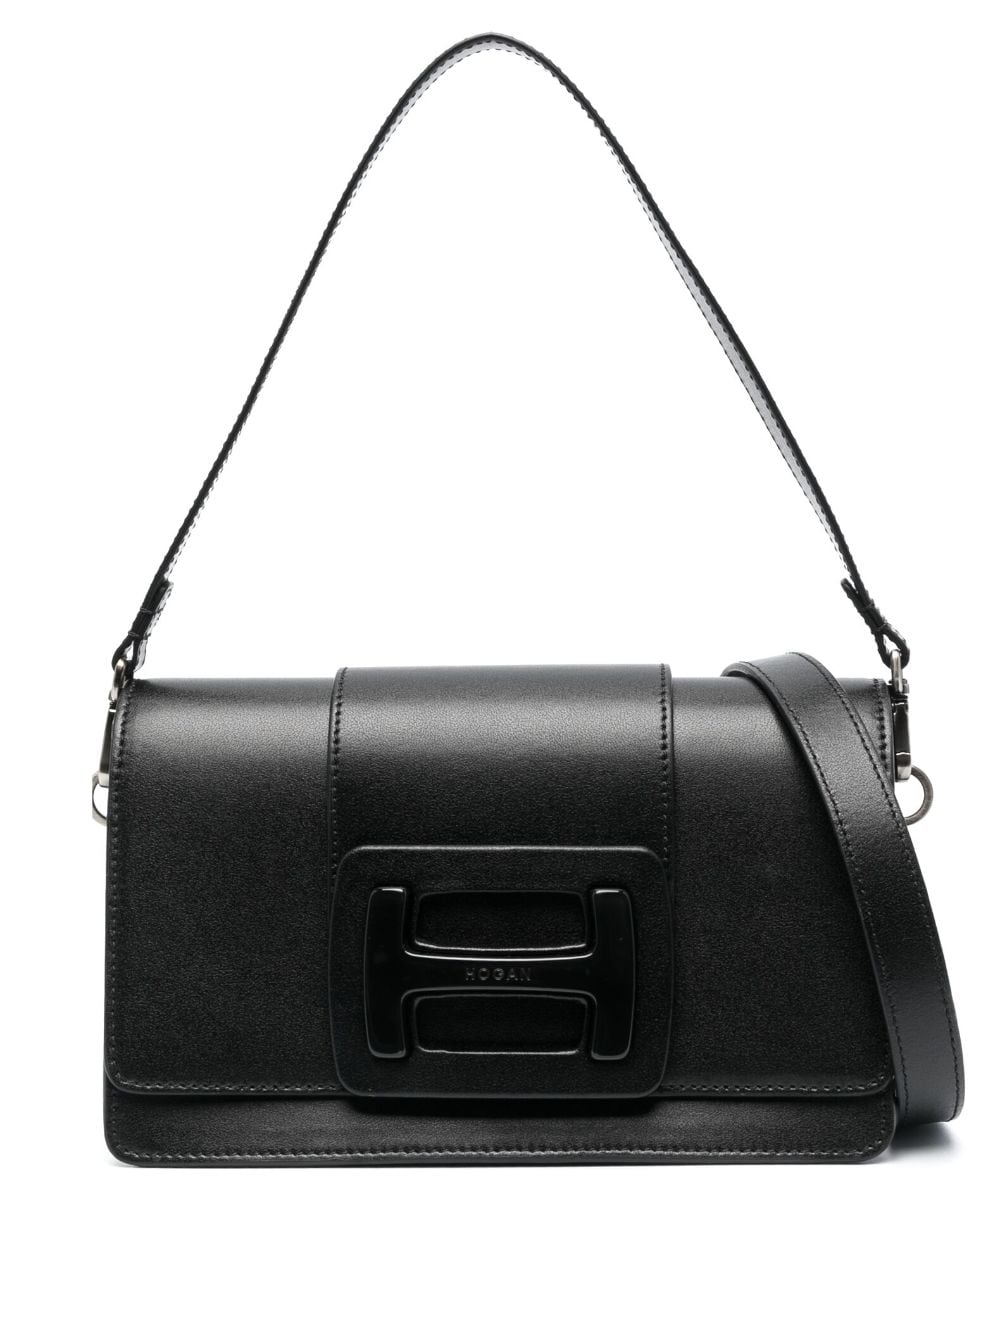 Túi xách da đeo vai H-Handbag màu đen cho phụ nữ